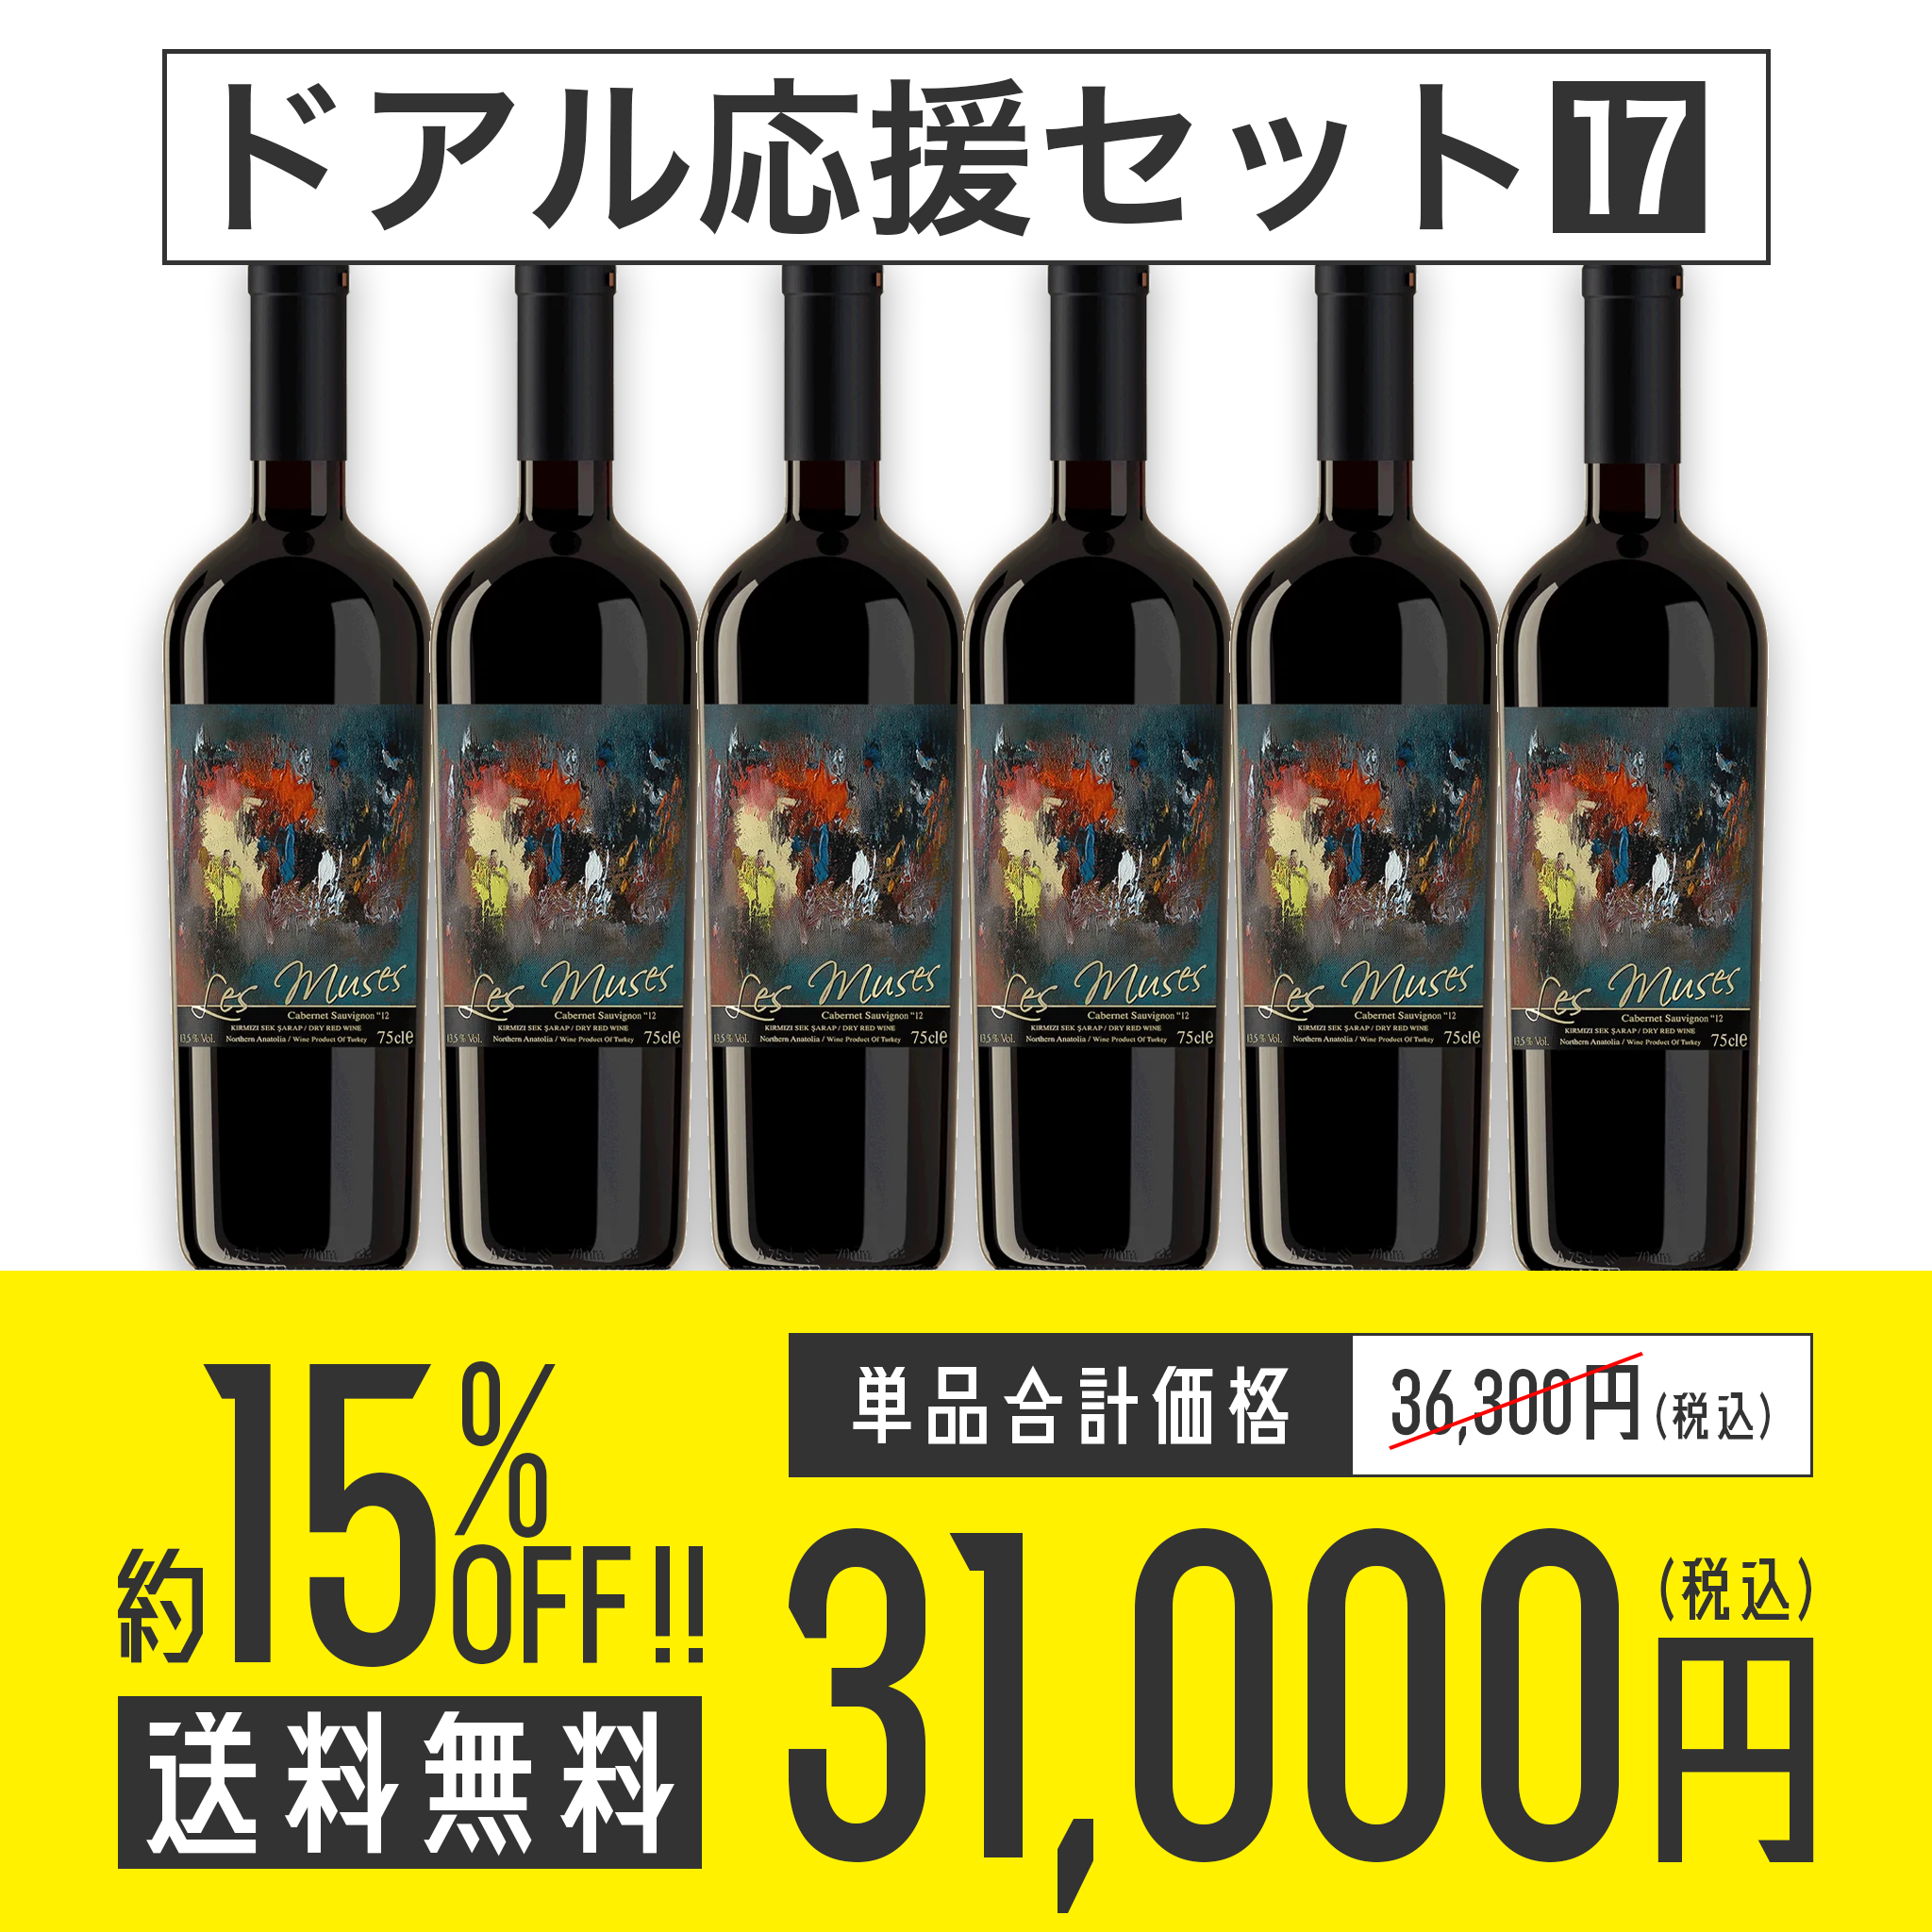 【送料無料】ドアル応援セット No.17 Diren Wine レ・ミューズ 赤ワイン6本セット